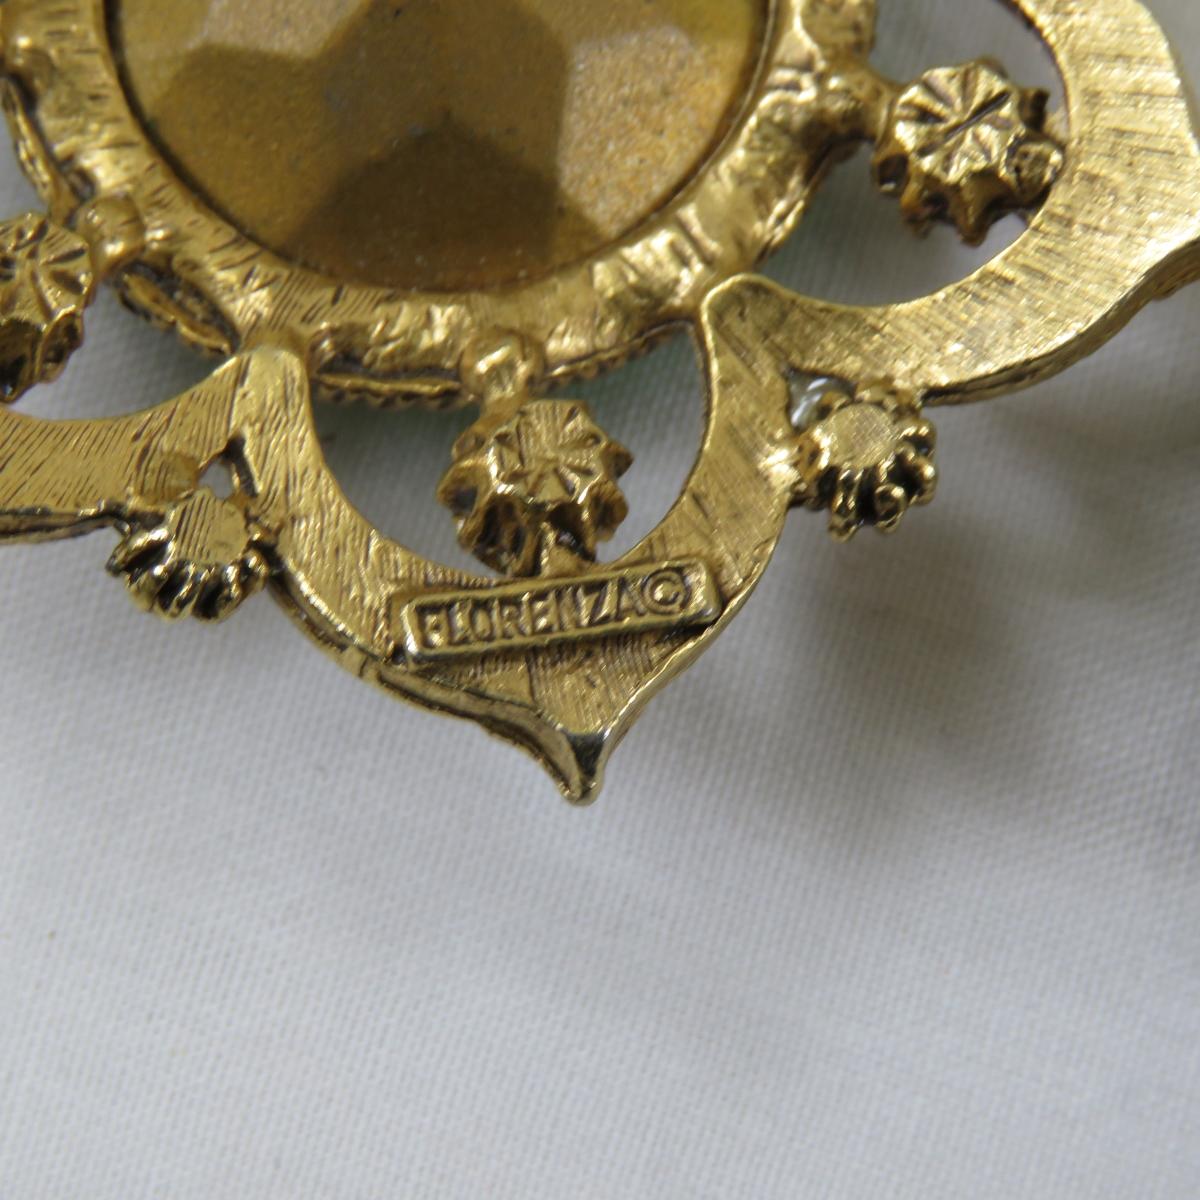 Vintage Florenza Wear & Repair Jewelry